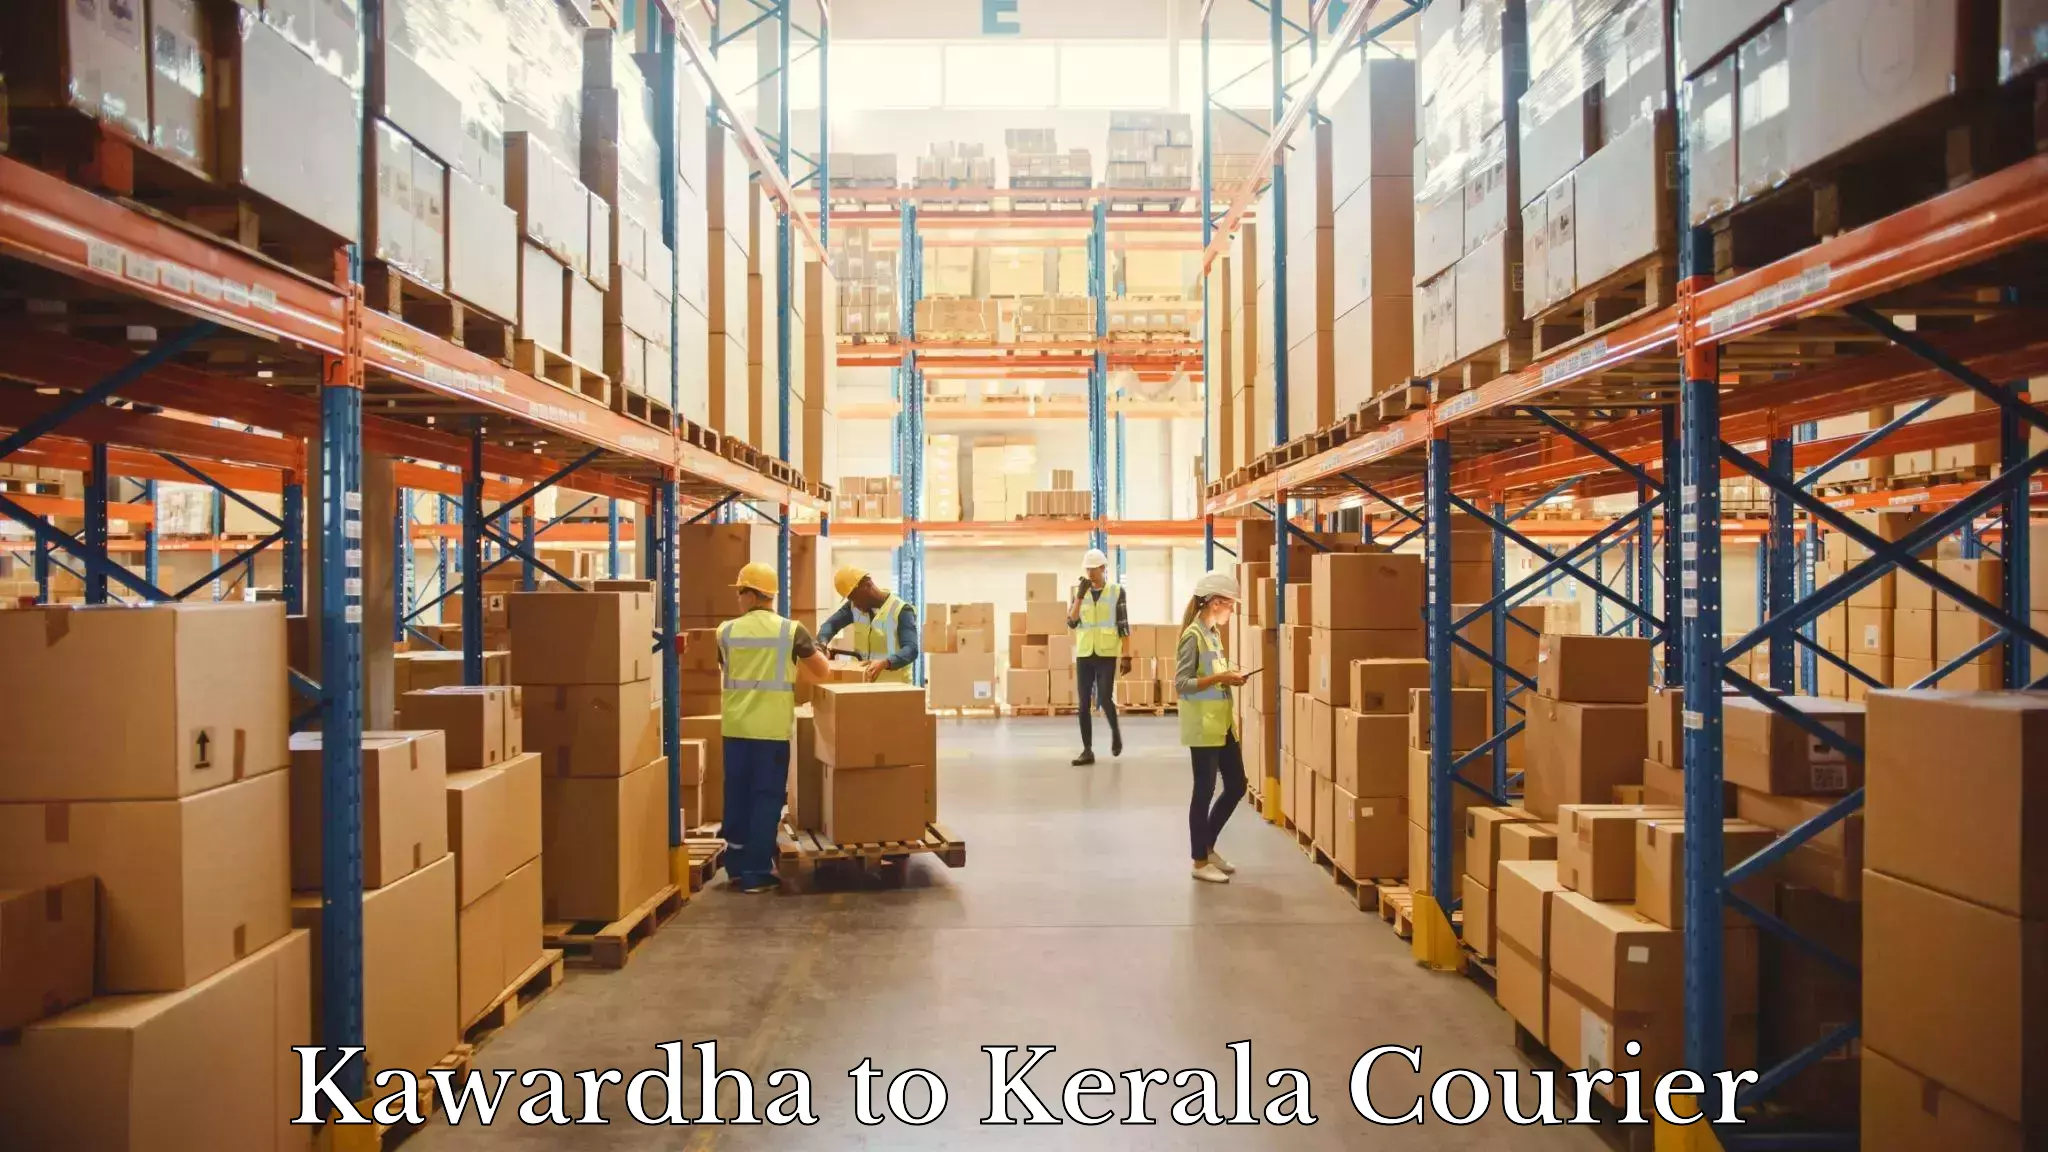 Modern courier technology Kawardha to Nenmara